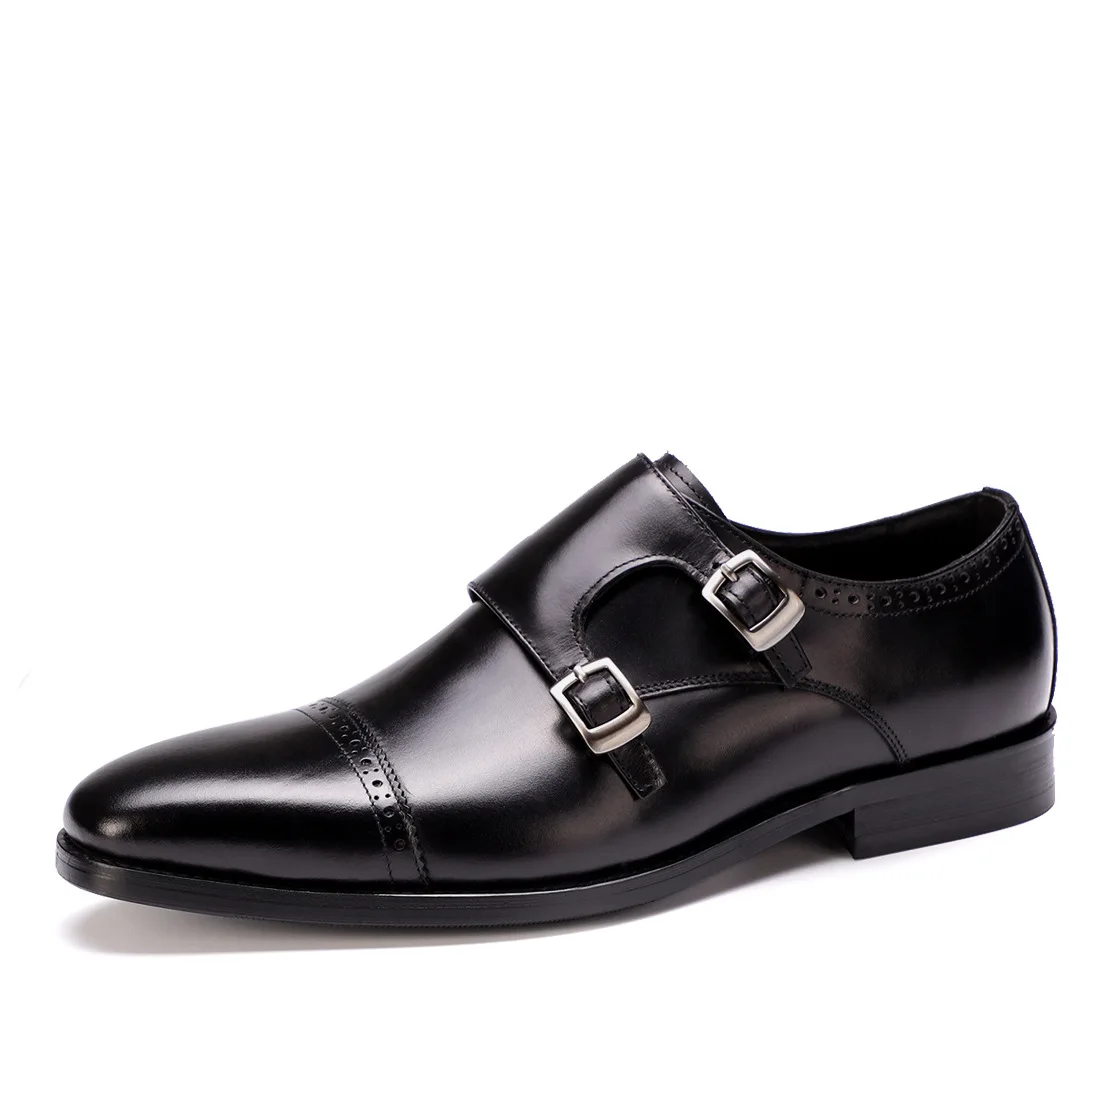 QYFCIOUFU/Мужские модельные туфли; туфли из натуральной кожи в стиле Дерби без застежки с пряжкой; летние мужские туфли на ремешке для свадебной вечеринки; американские размеры 11,5